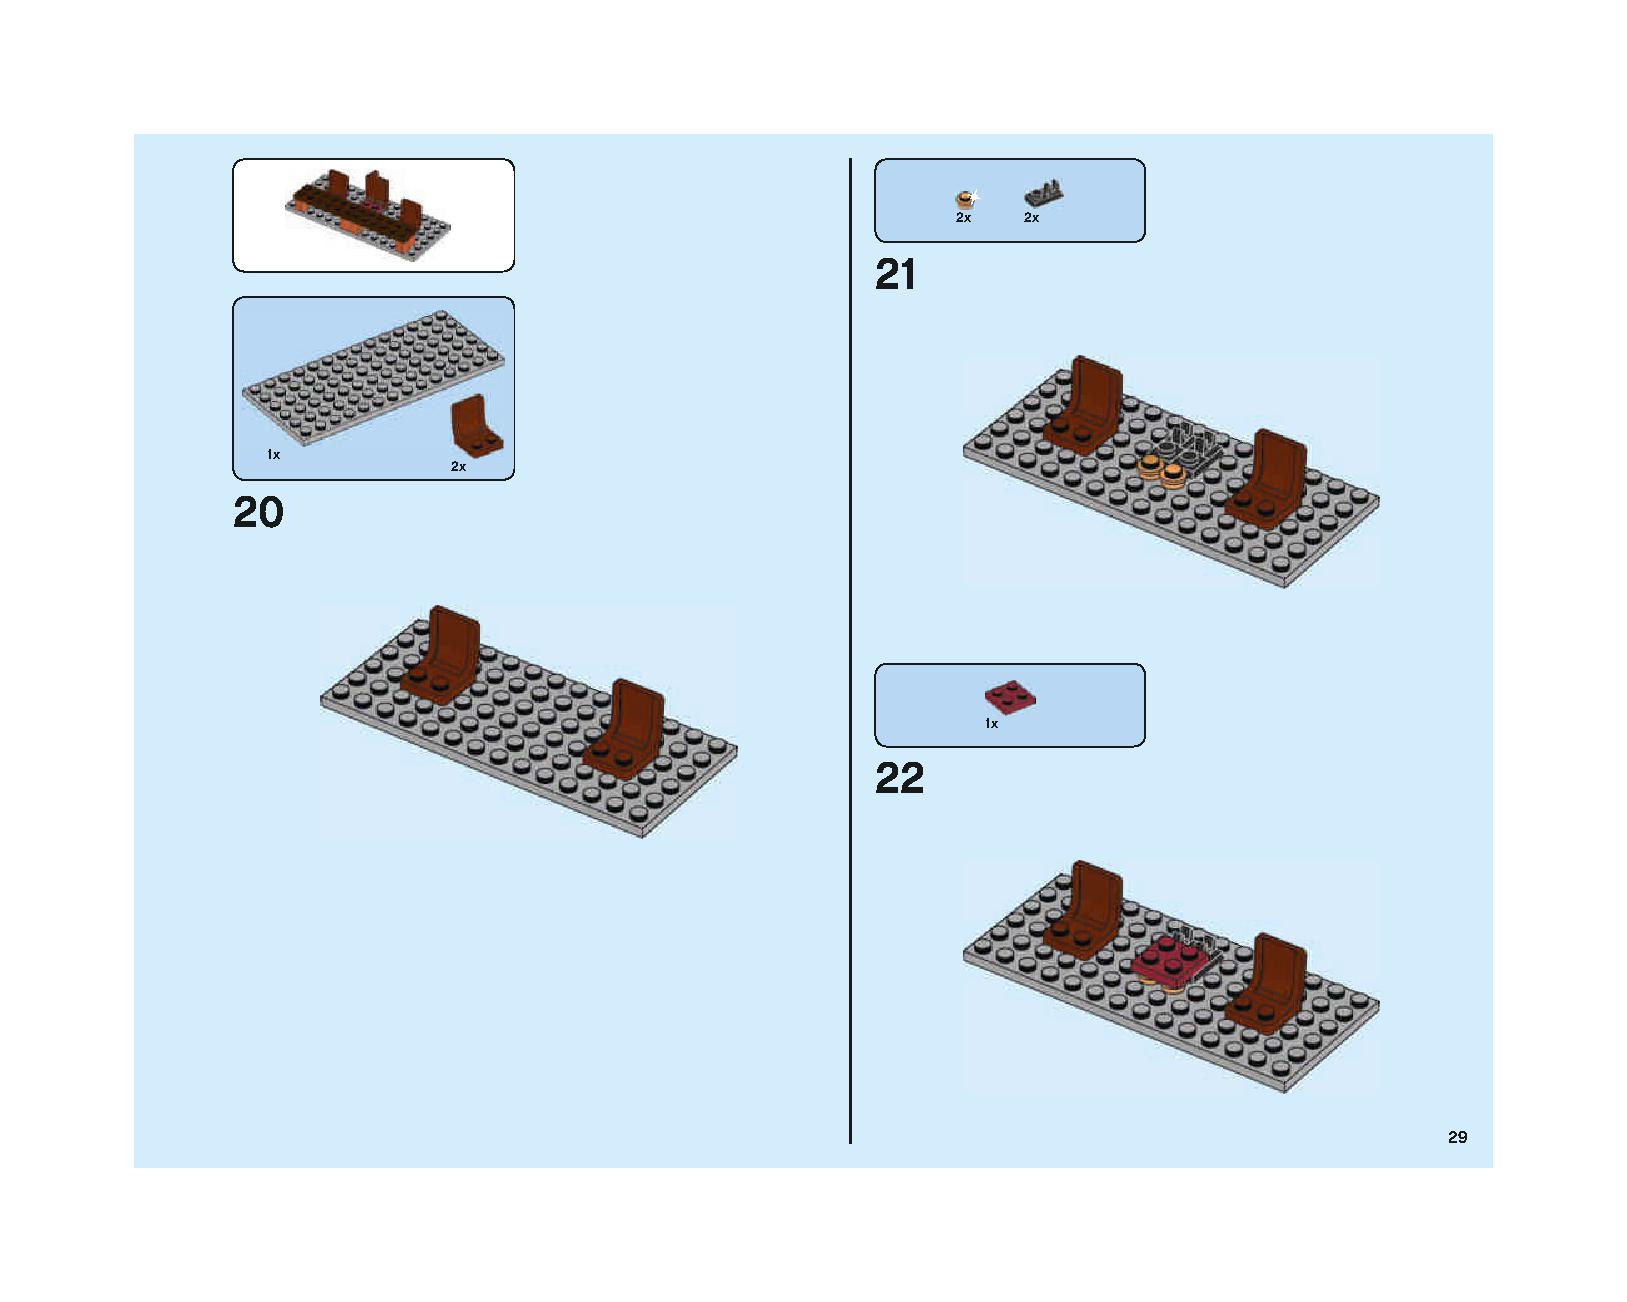 ホグワーツの大広間 75954 レゴの商品情報 レゴの説明書・組立方法 29 page